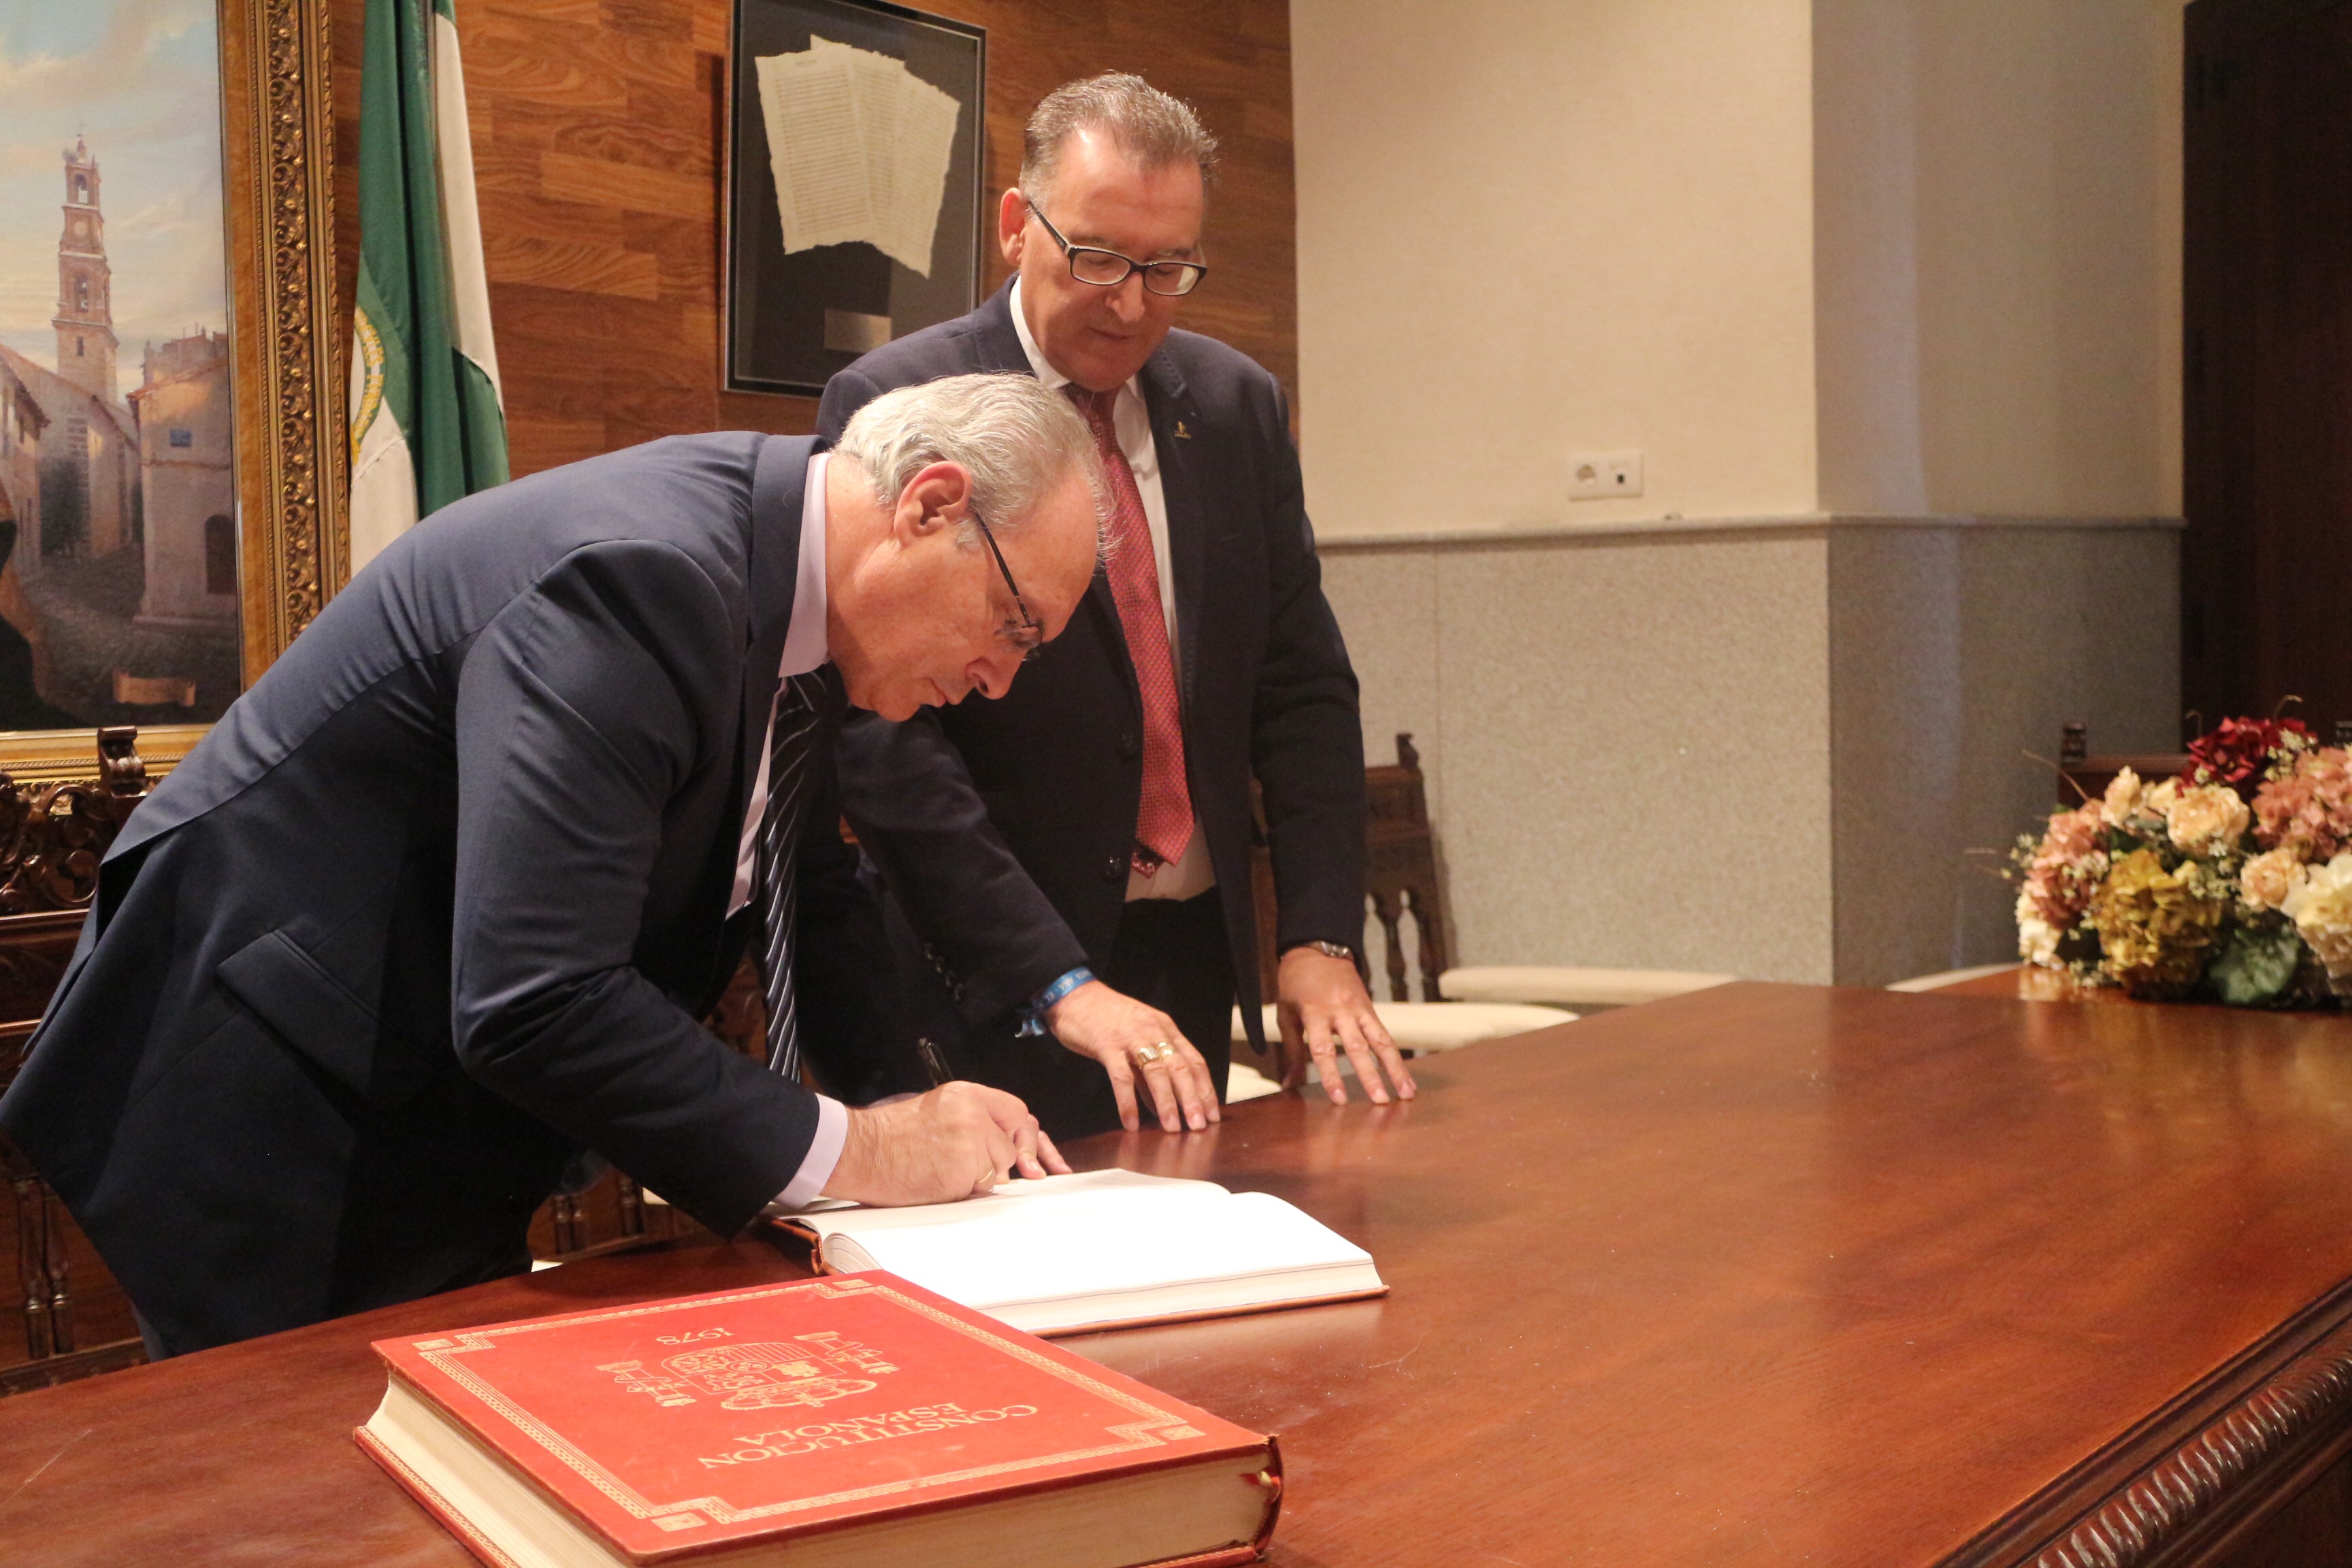  El presidente del Parlamento firma en el Libro de Honor de El Viso (Crdoba) en presencia del alcalde del municipio